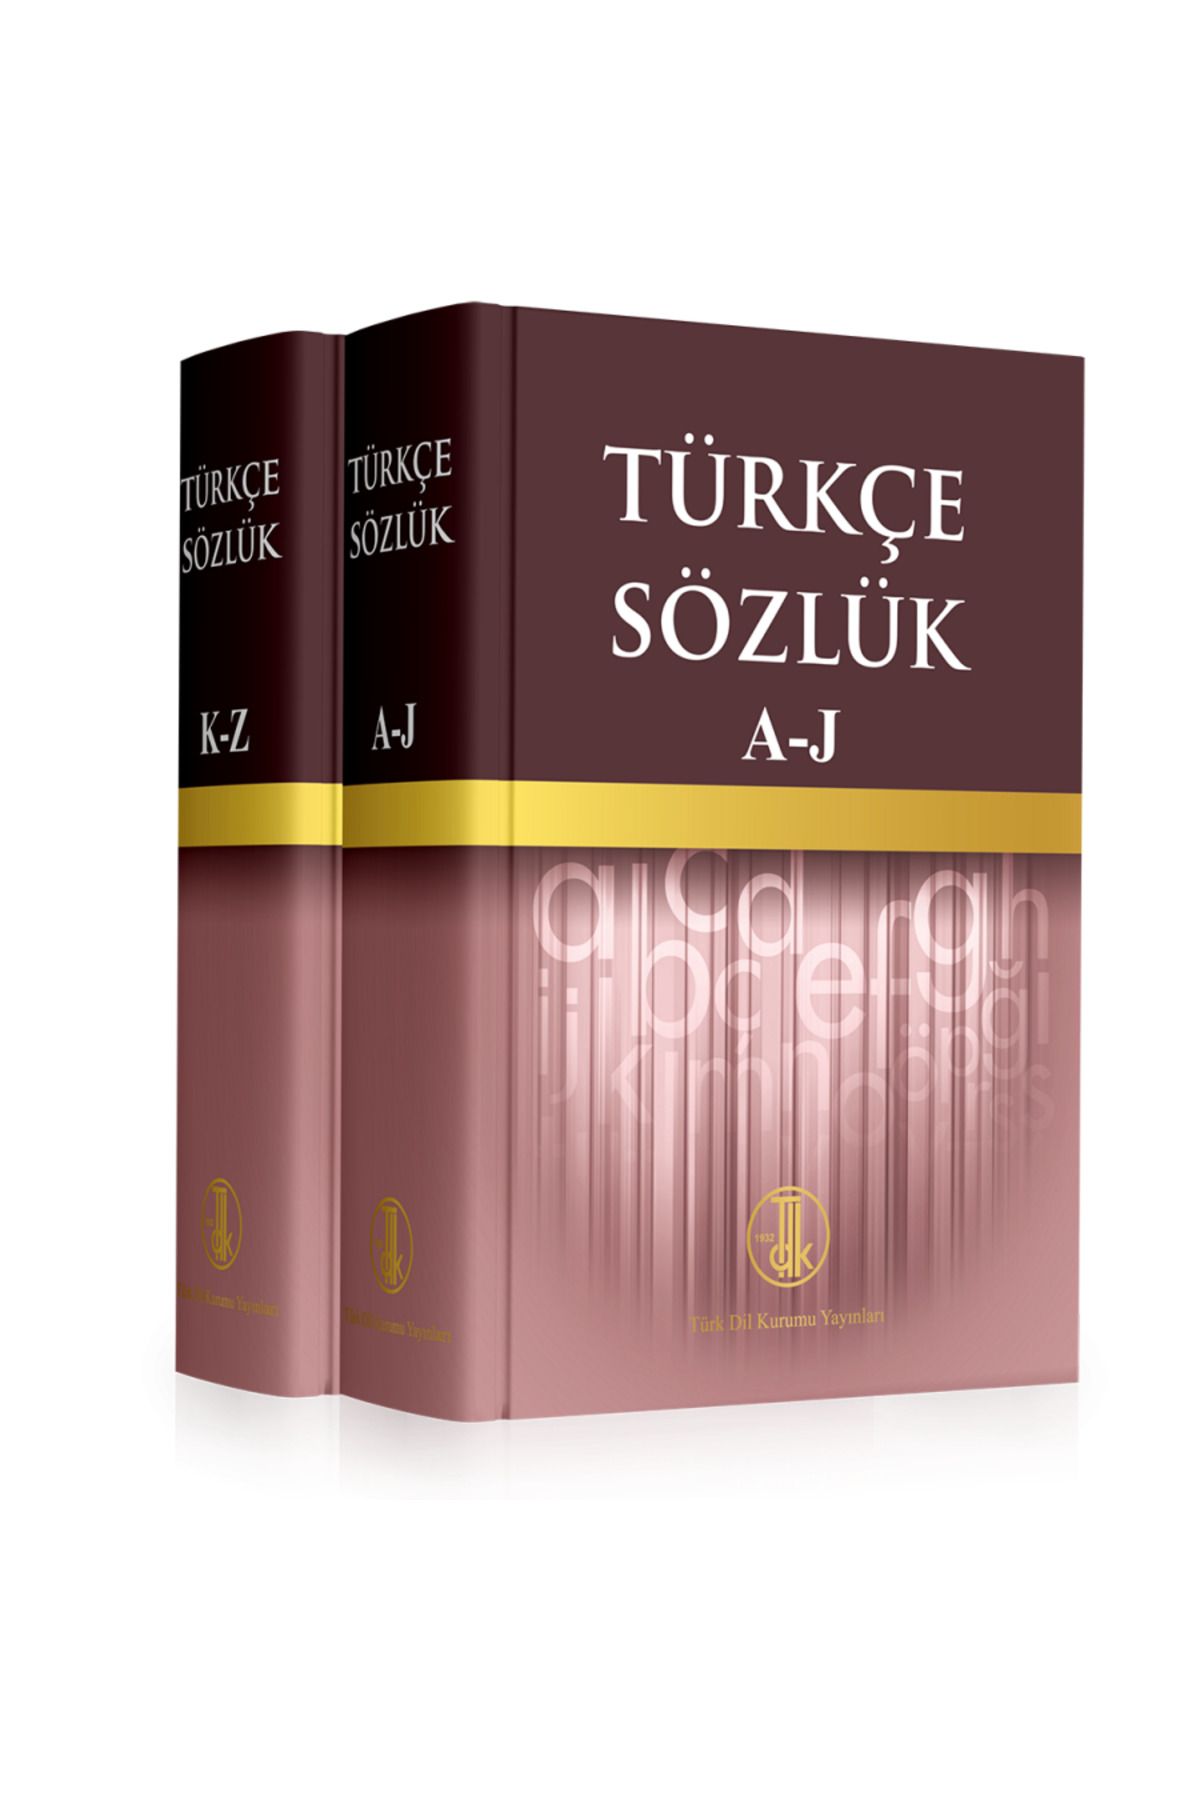 Tdk Yayınları Büyük Türkçe Sözlük 12. baskı Tdk